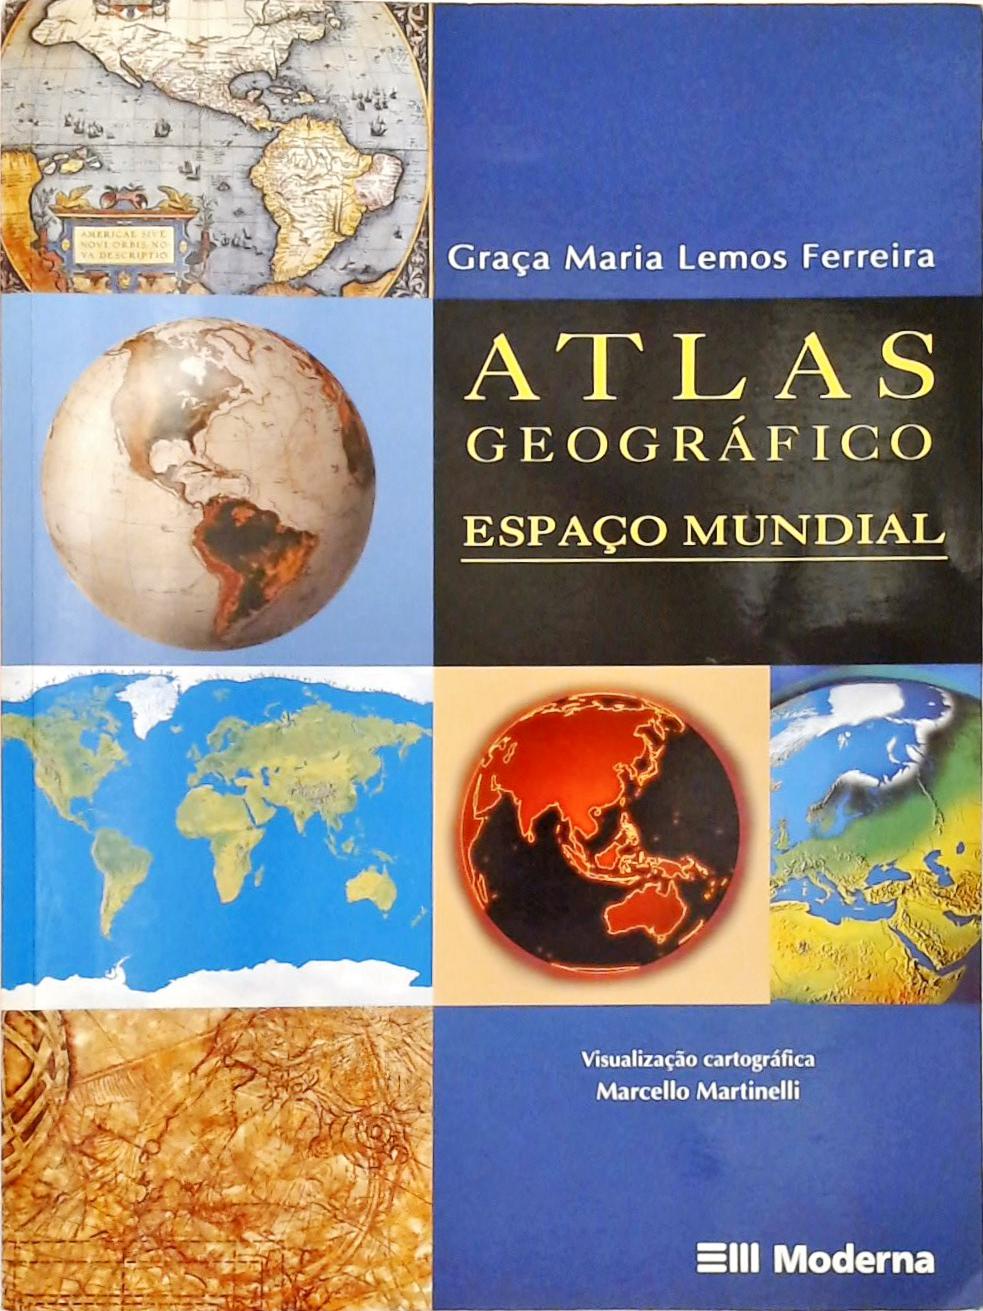 Atlas Geográfico (2004)